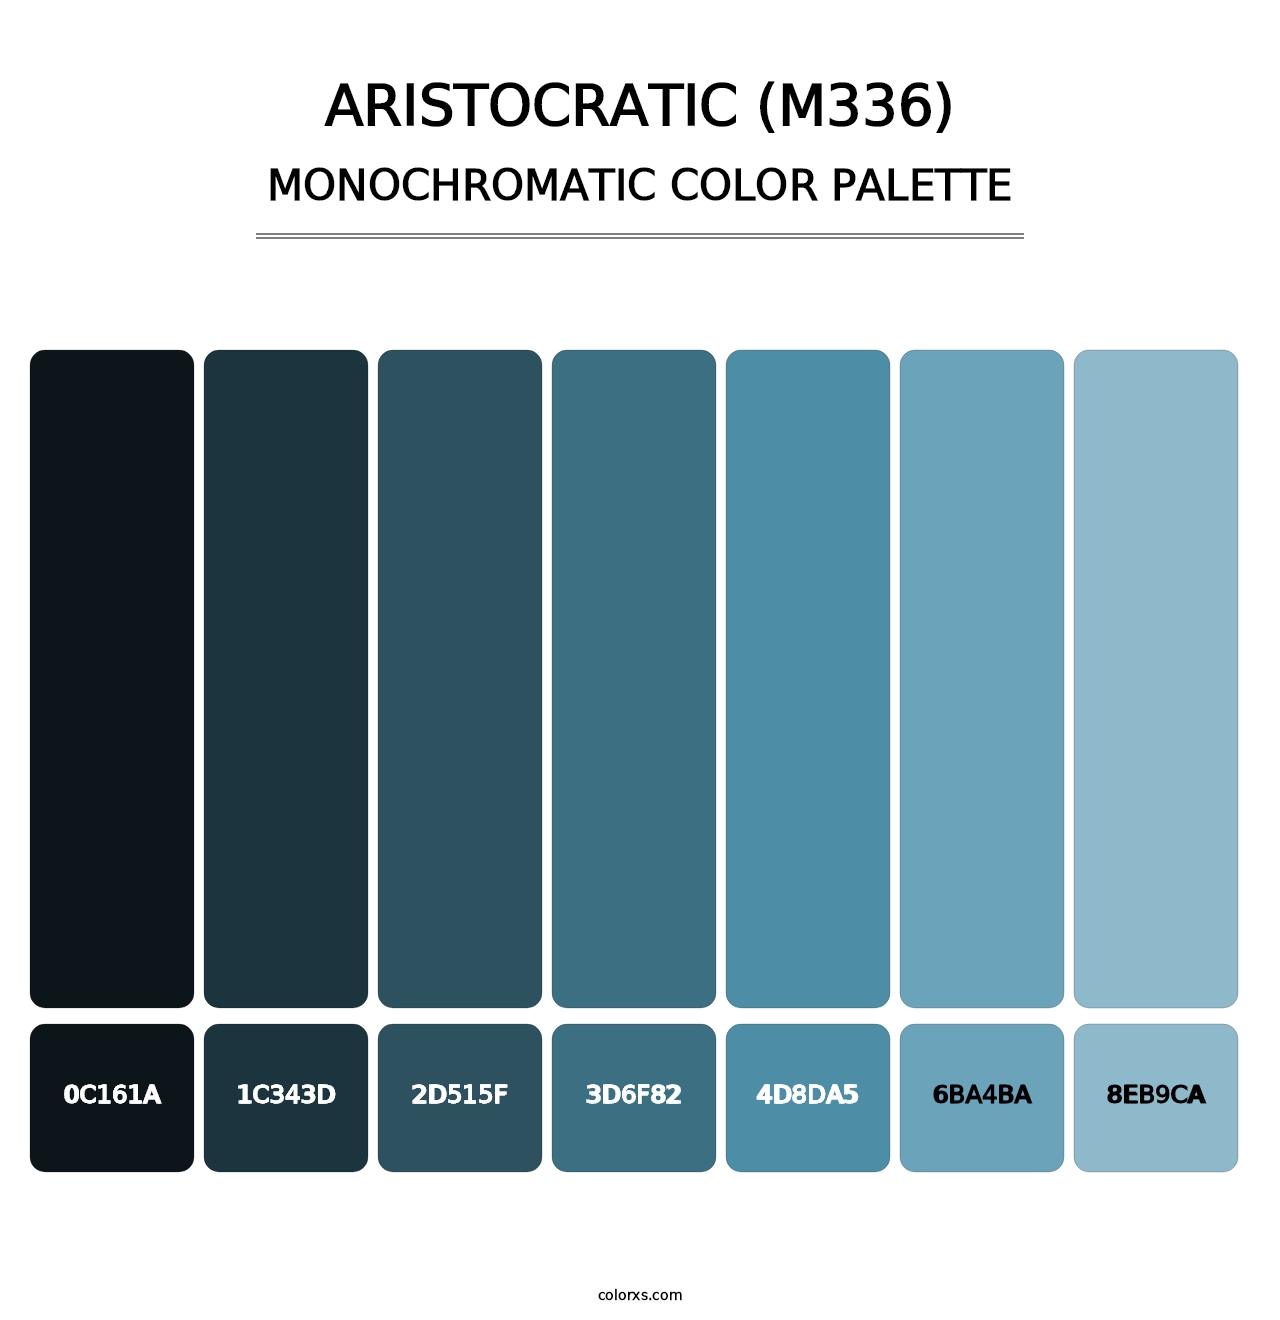 Aristocratic (M336) - Monochromatic Color Palette